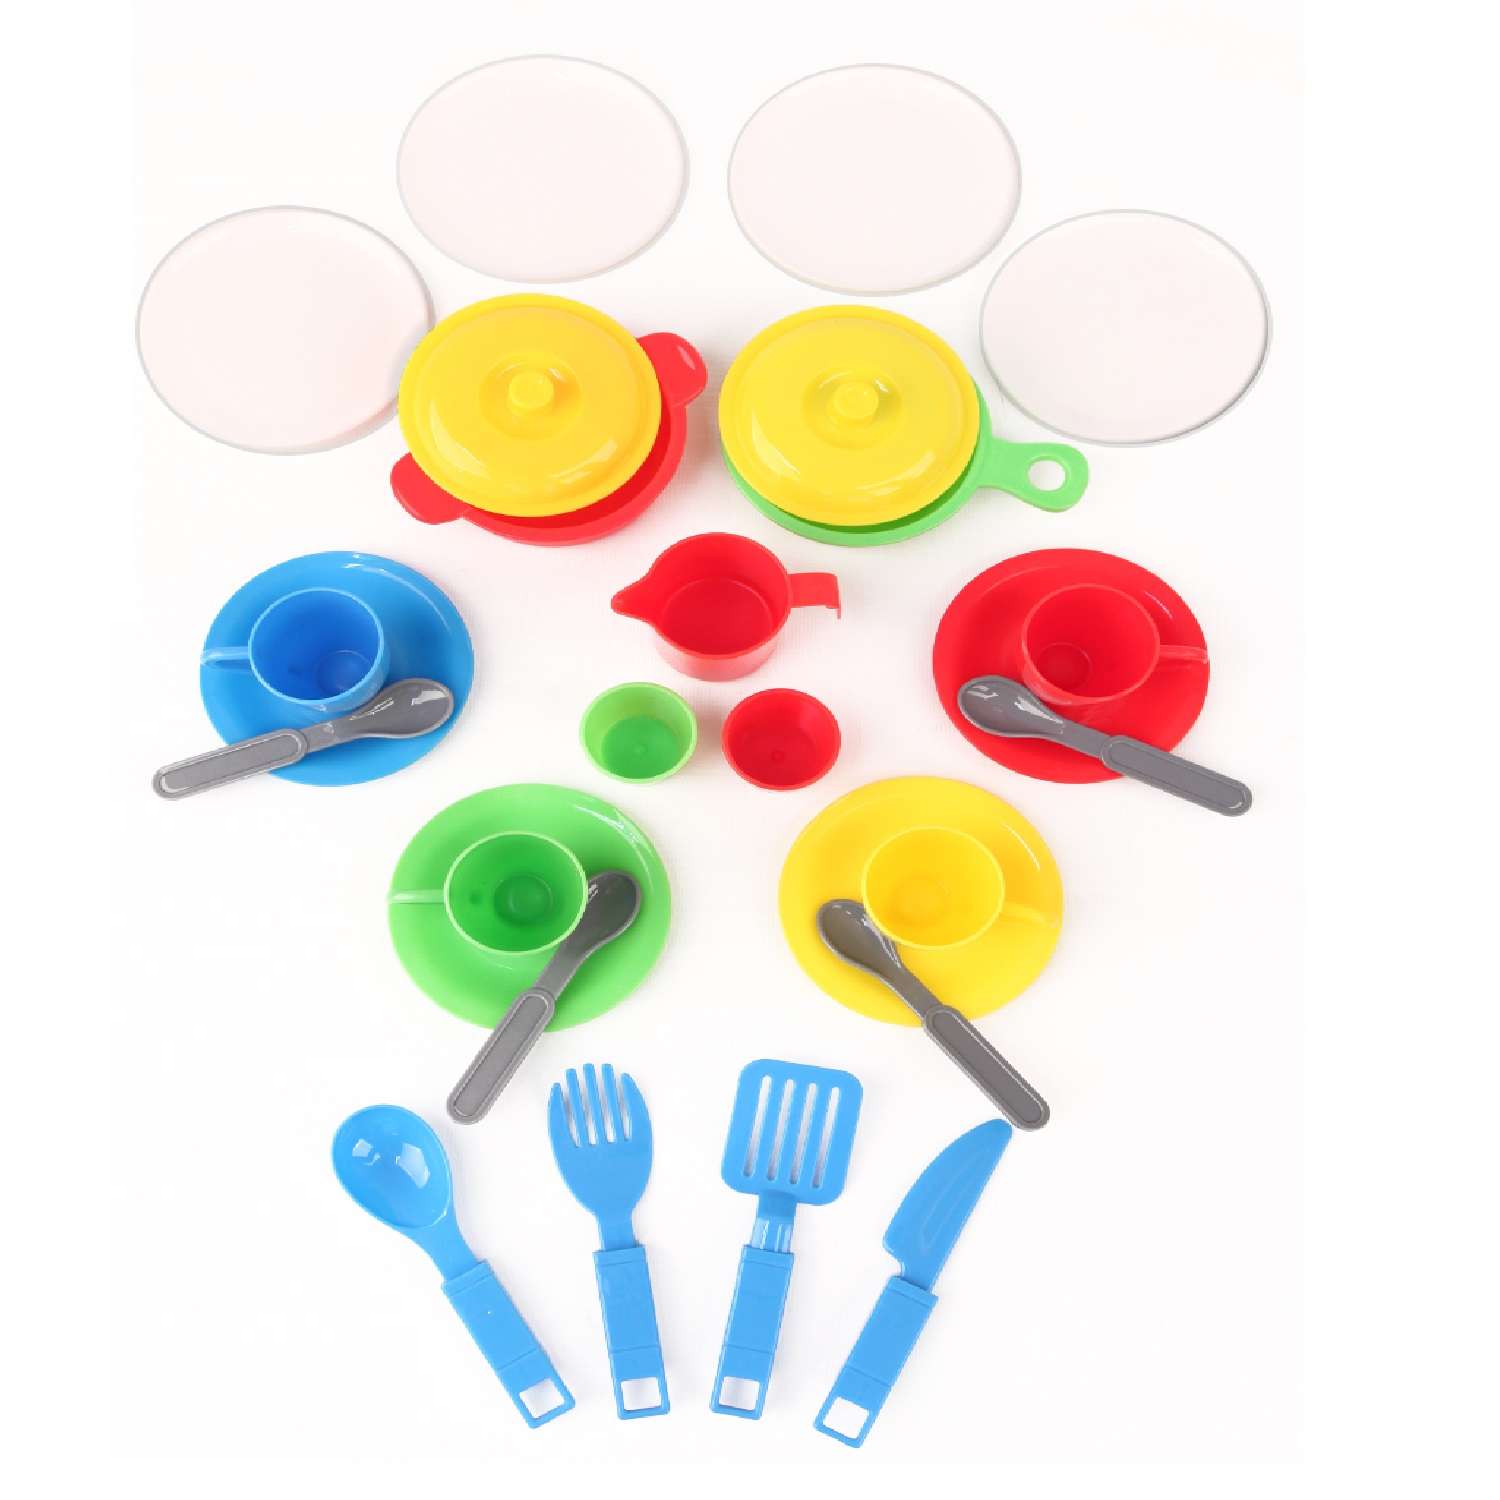 Игровой набор для кухни Green Plast игрушечная посуда детская в сумочке 27 элементов - фото 2